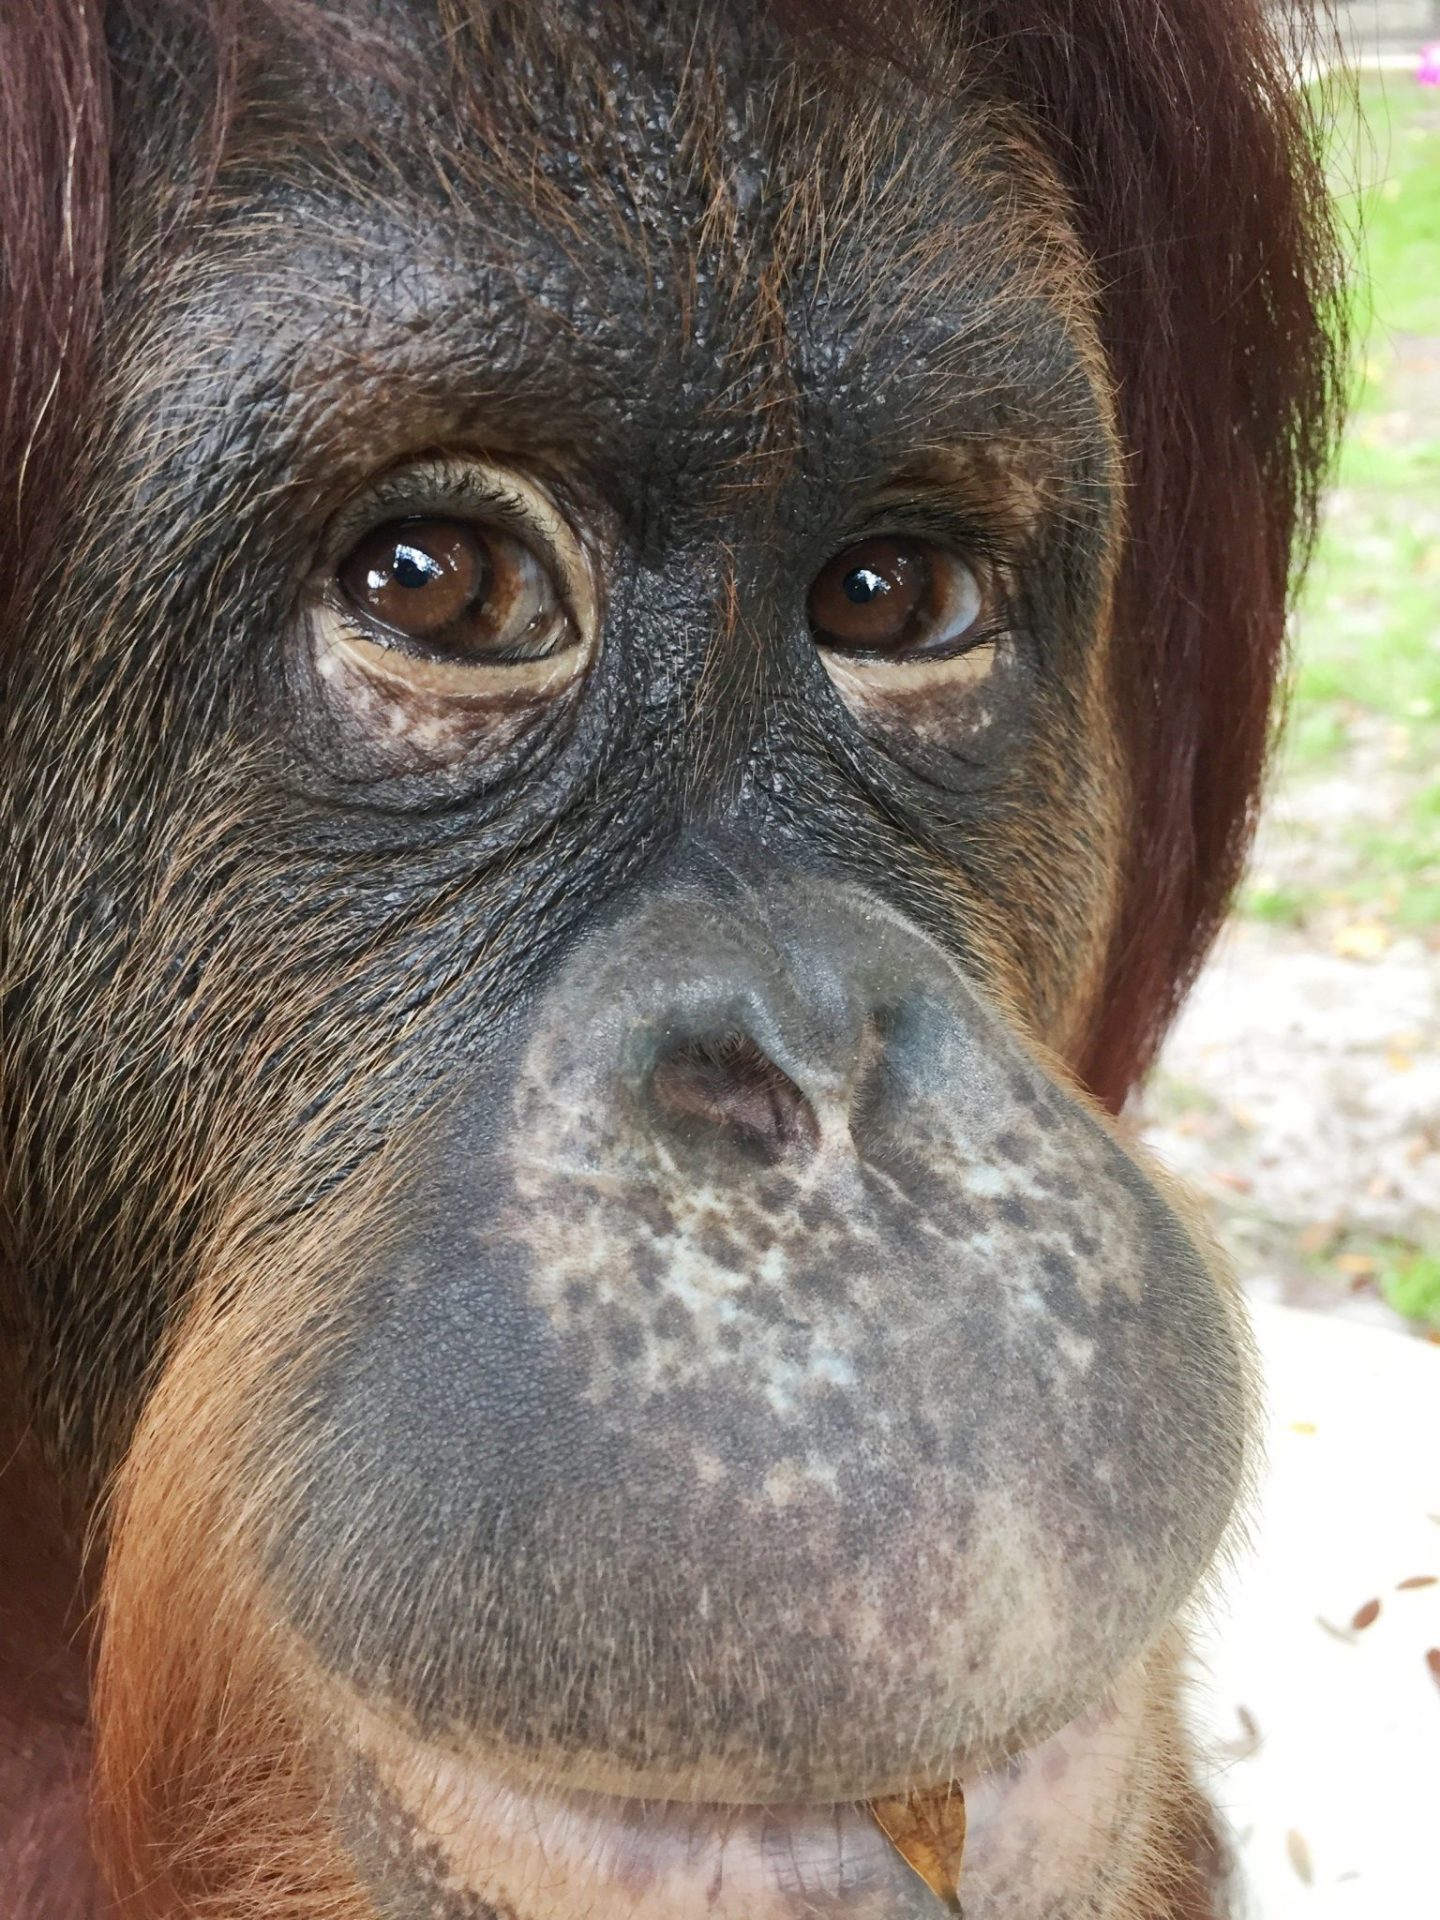 ACOMPAÑA CRÓNICA:EEUU GORILAS MIA20. MIAMI (FL, EE.UU.), 02/06/2016.- Fotografía sin fecha cedida de un bebé de orangután en el boscoso África tropical situado en Wauchula, en el centro del estado de Florida (EE.UU.), un remoto paraje que alberga uno de los más importantes hogares de grandes simios en Estados Unidos. Santuario para grandes primates fundado en 1993, el Centro para Grandes Simios es un entramado selvático de 120 acres (486.000 metros cuadrados) donde conviven especies de grandes simios como orangutanes, chimpancés y bonobos rescatados de la industria del entretenimientos, los laboratorios de experimentos científicos, zoológicos y tiendas de mascotas. EFE/Center for Great Apes/SOLO USO EDITORIAL/NO VENTAS